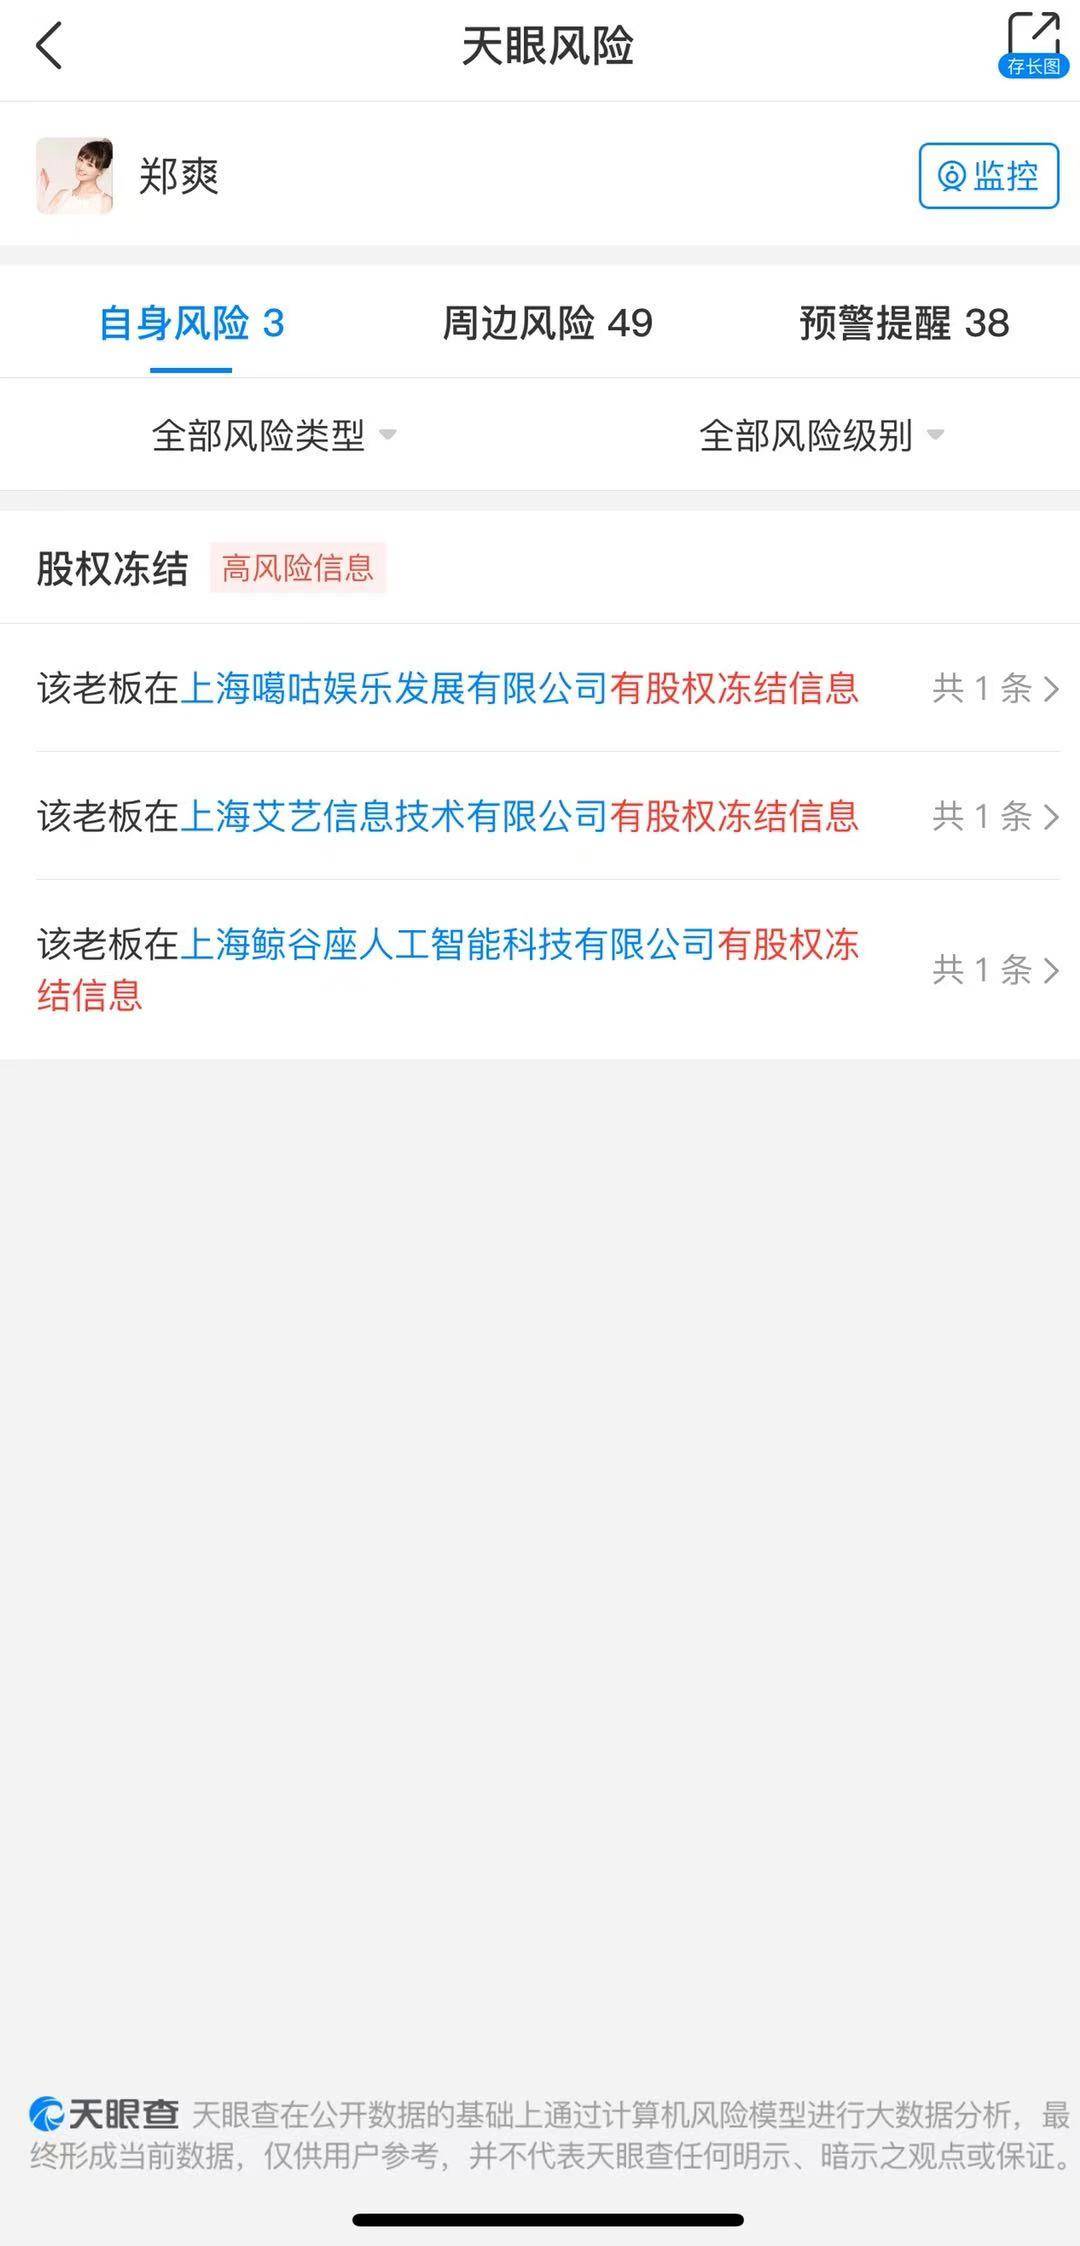 《翡翠恋人》出品公司东开之星影视诉郑爽服务合同纠纷案上海开庭